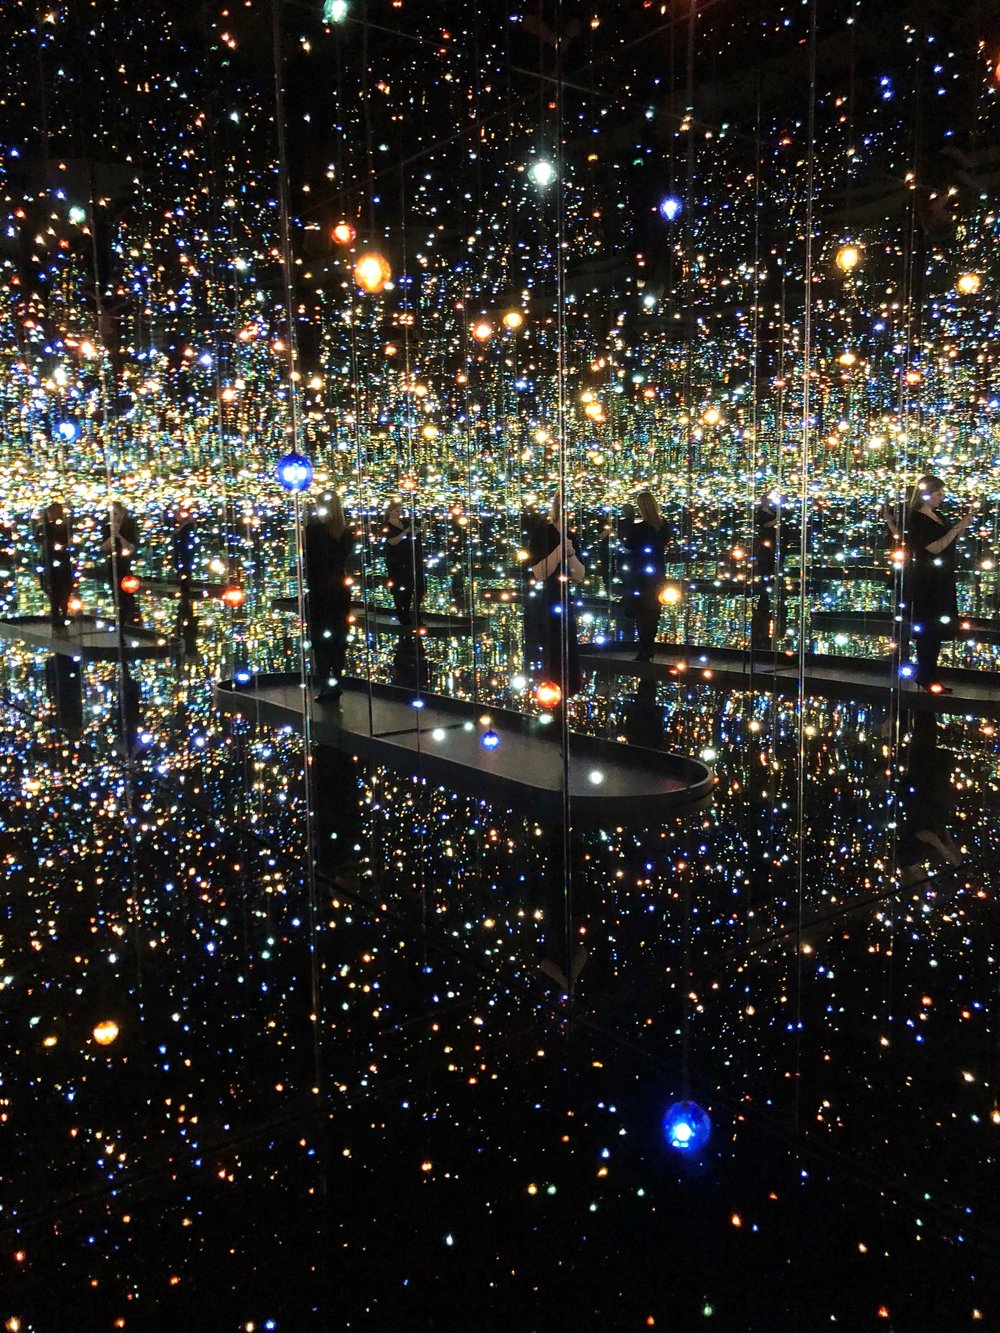 Yayoi Kusama Infinity Mirrors